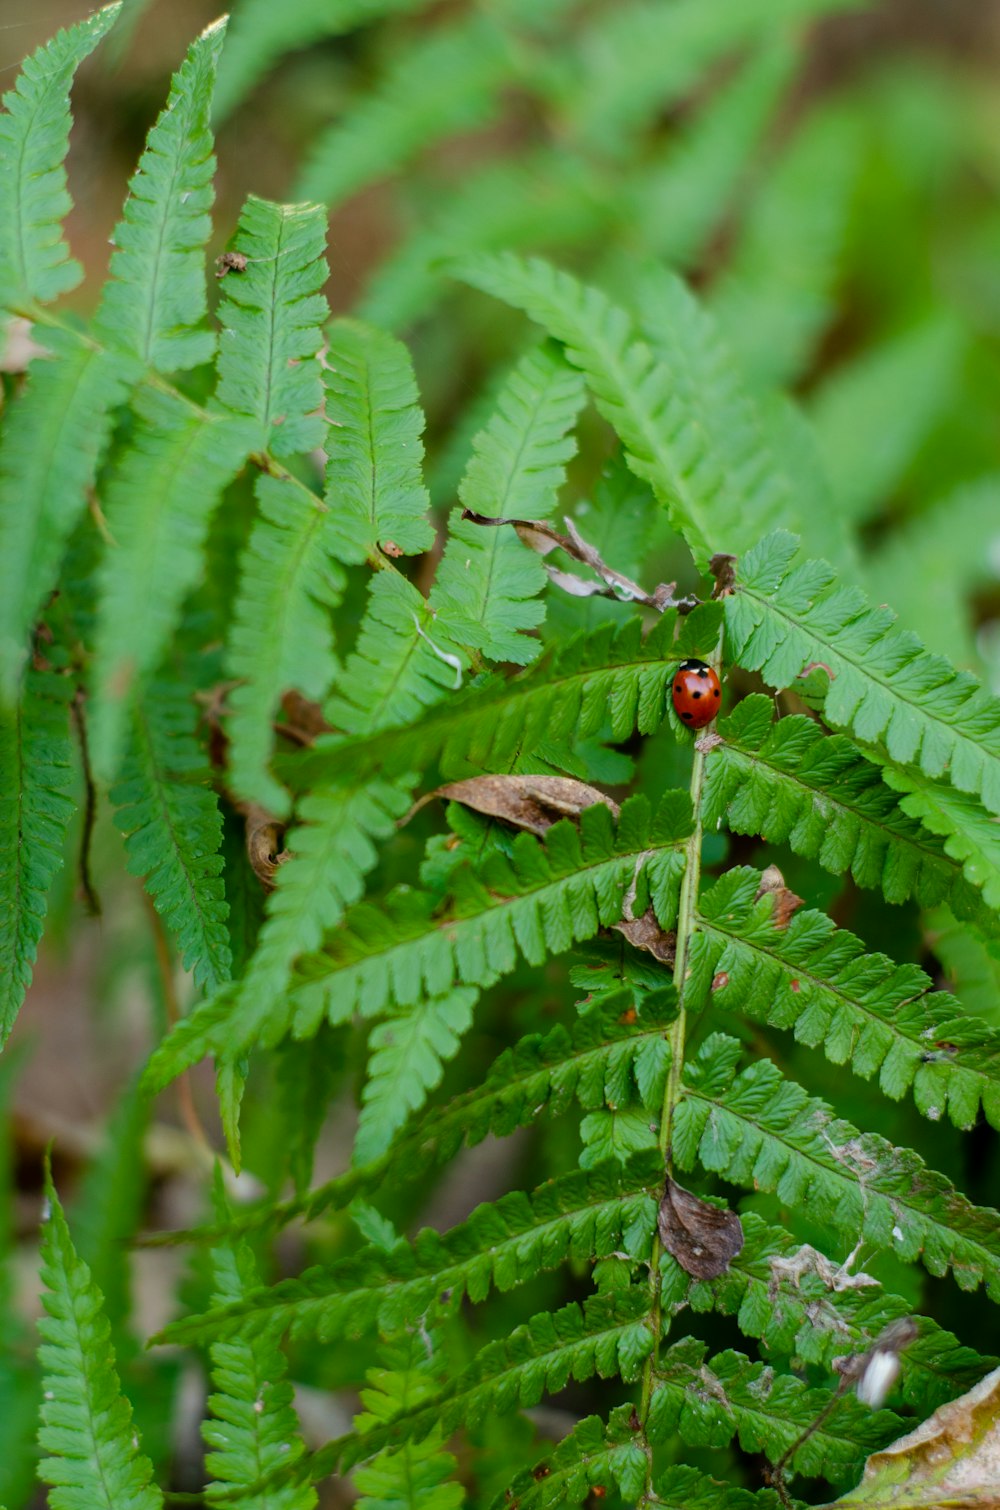 a lady bug crawling on a fern leaf